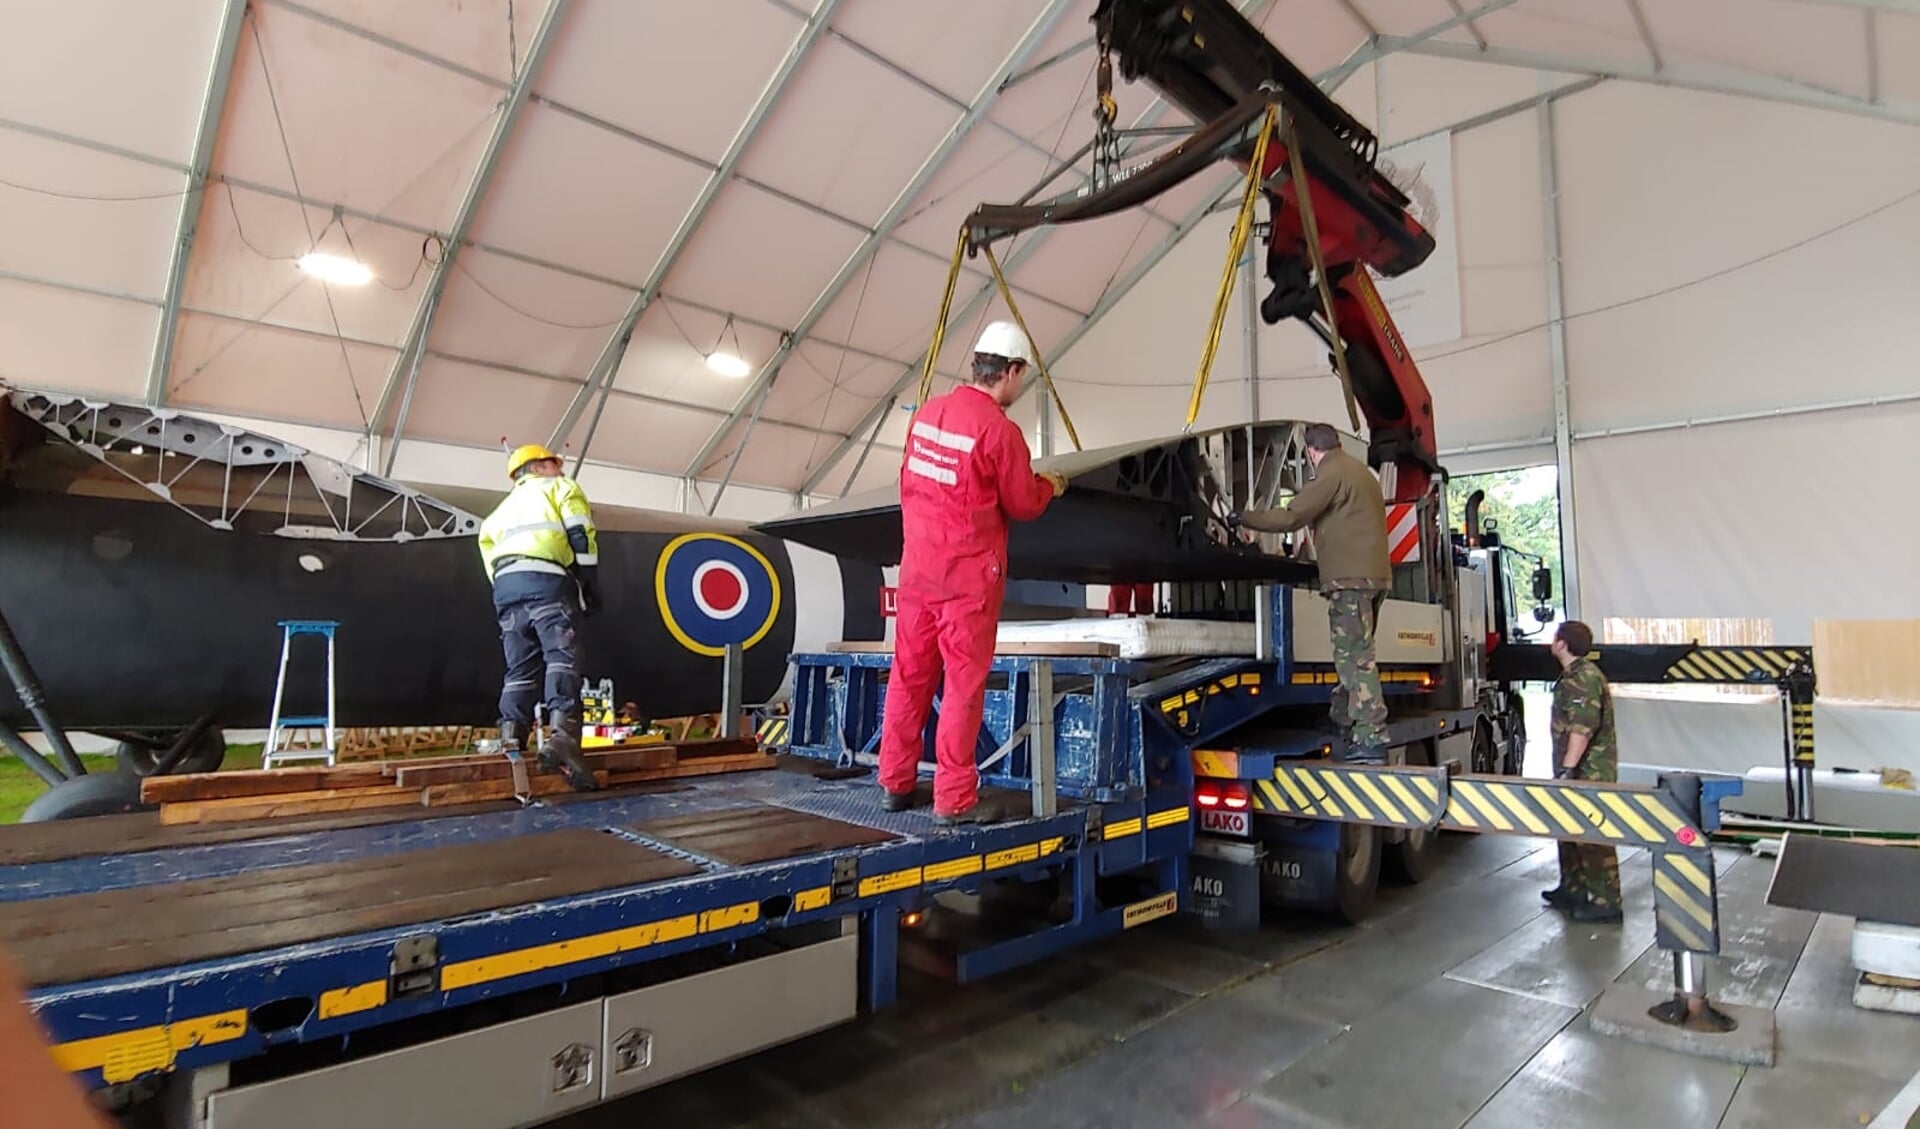 De Horsa Glider is maandag op transport gegaan naar Oorlogsmuseum Overloon.